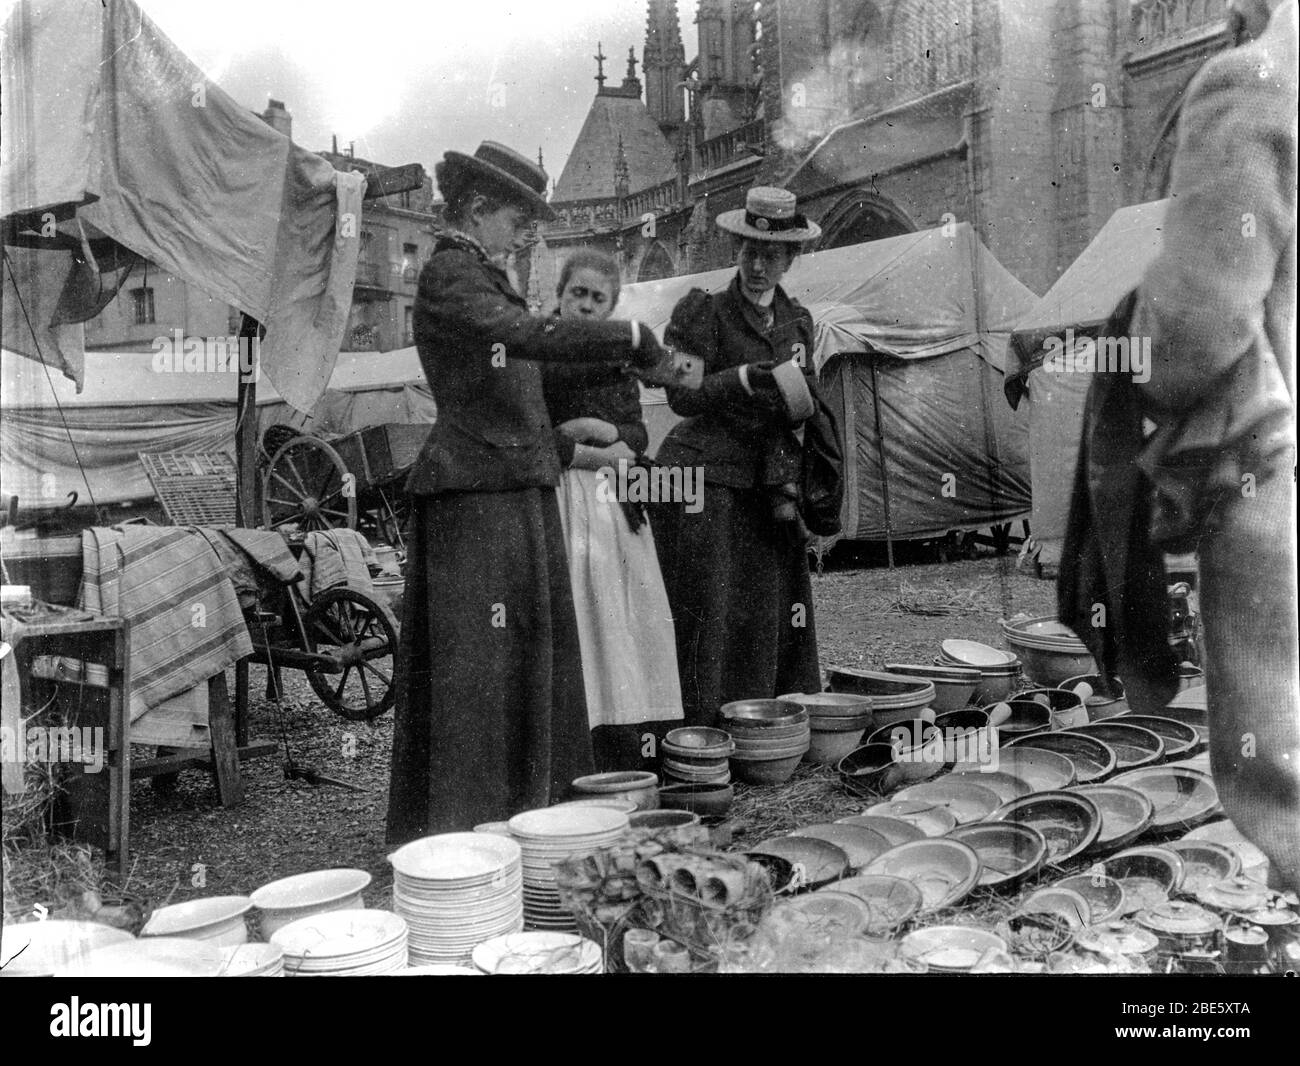 Deux femmes bien habillées et riches font du shopping dans un marché de la place de Dieppe en Normandie, en France dans les années 1890 Banque D'Images